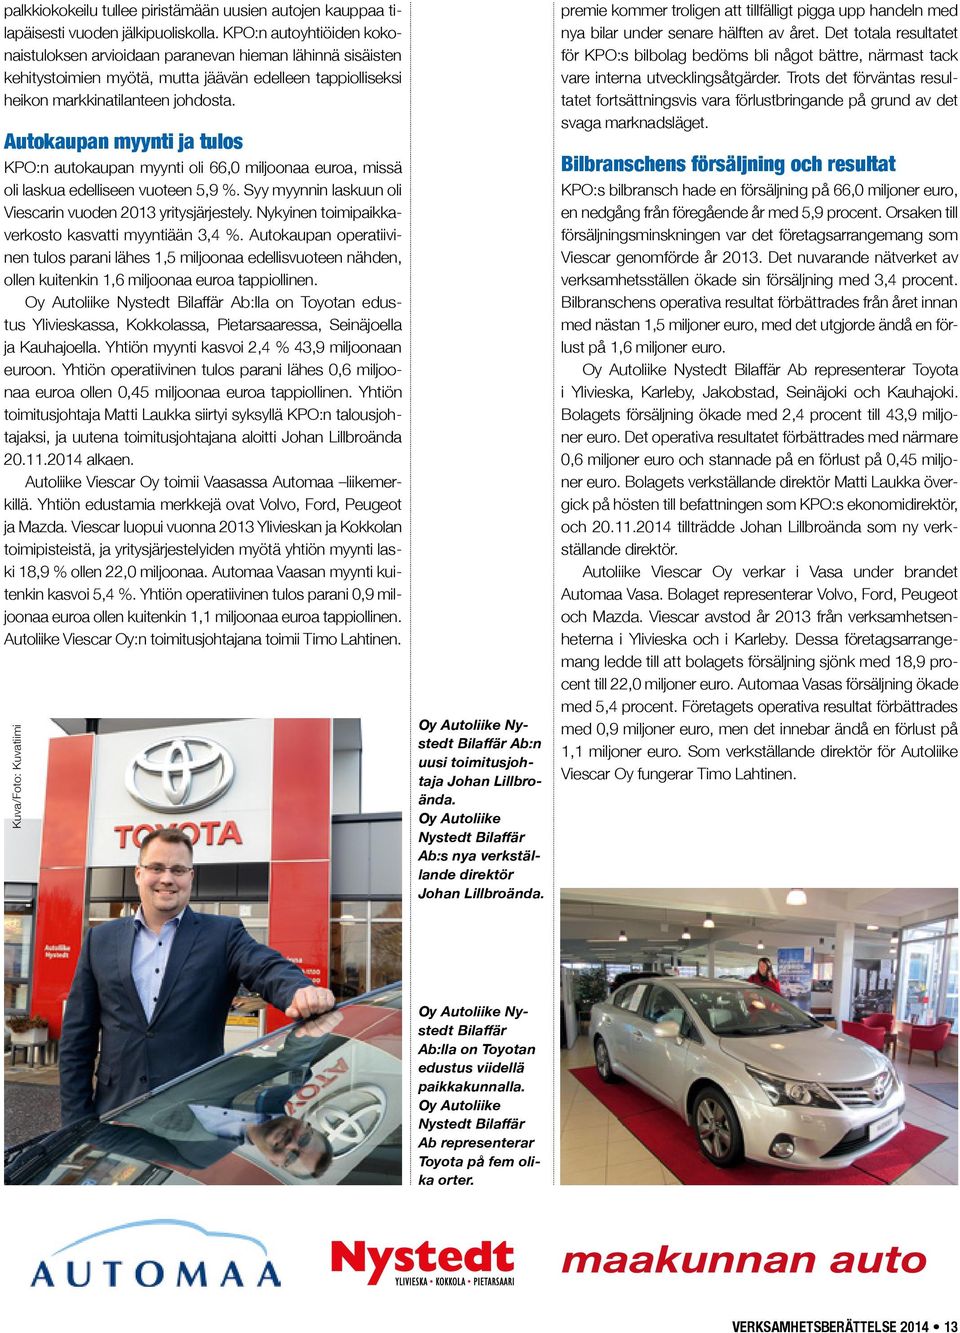 Autokaupan myynti ja tulos KPO:n autokaupan myynti oli 66,0 miljoonaa euroa, missä oli laskua edelliseen vuoteen 5,9 %. Syy myynnin laskuun oli Viescarin vuoden 2013 yritysjärjestely.